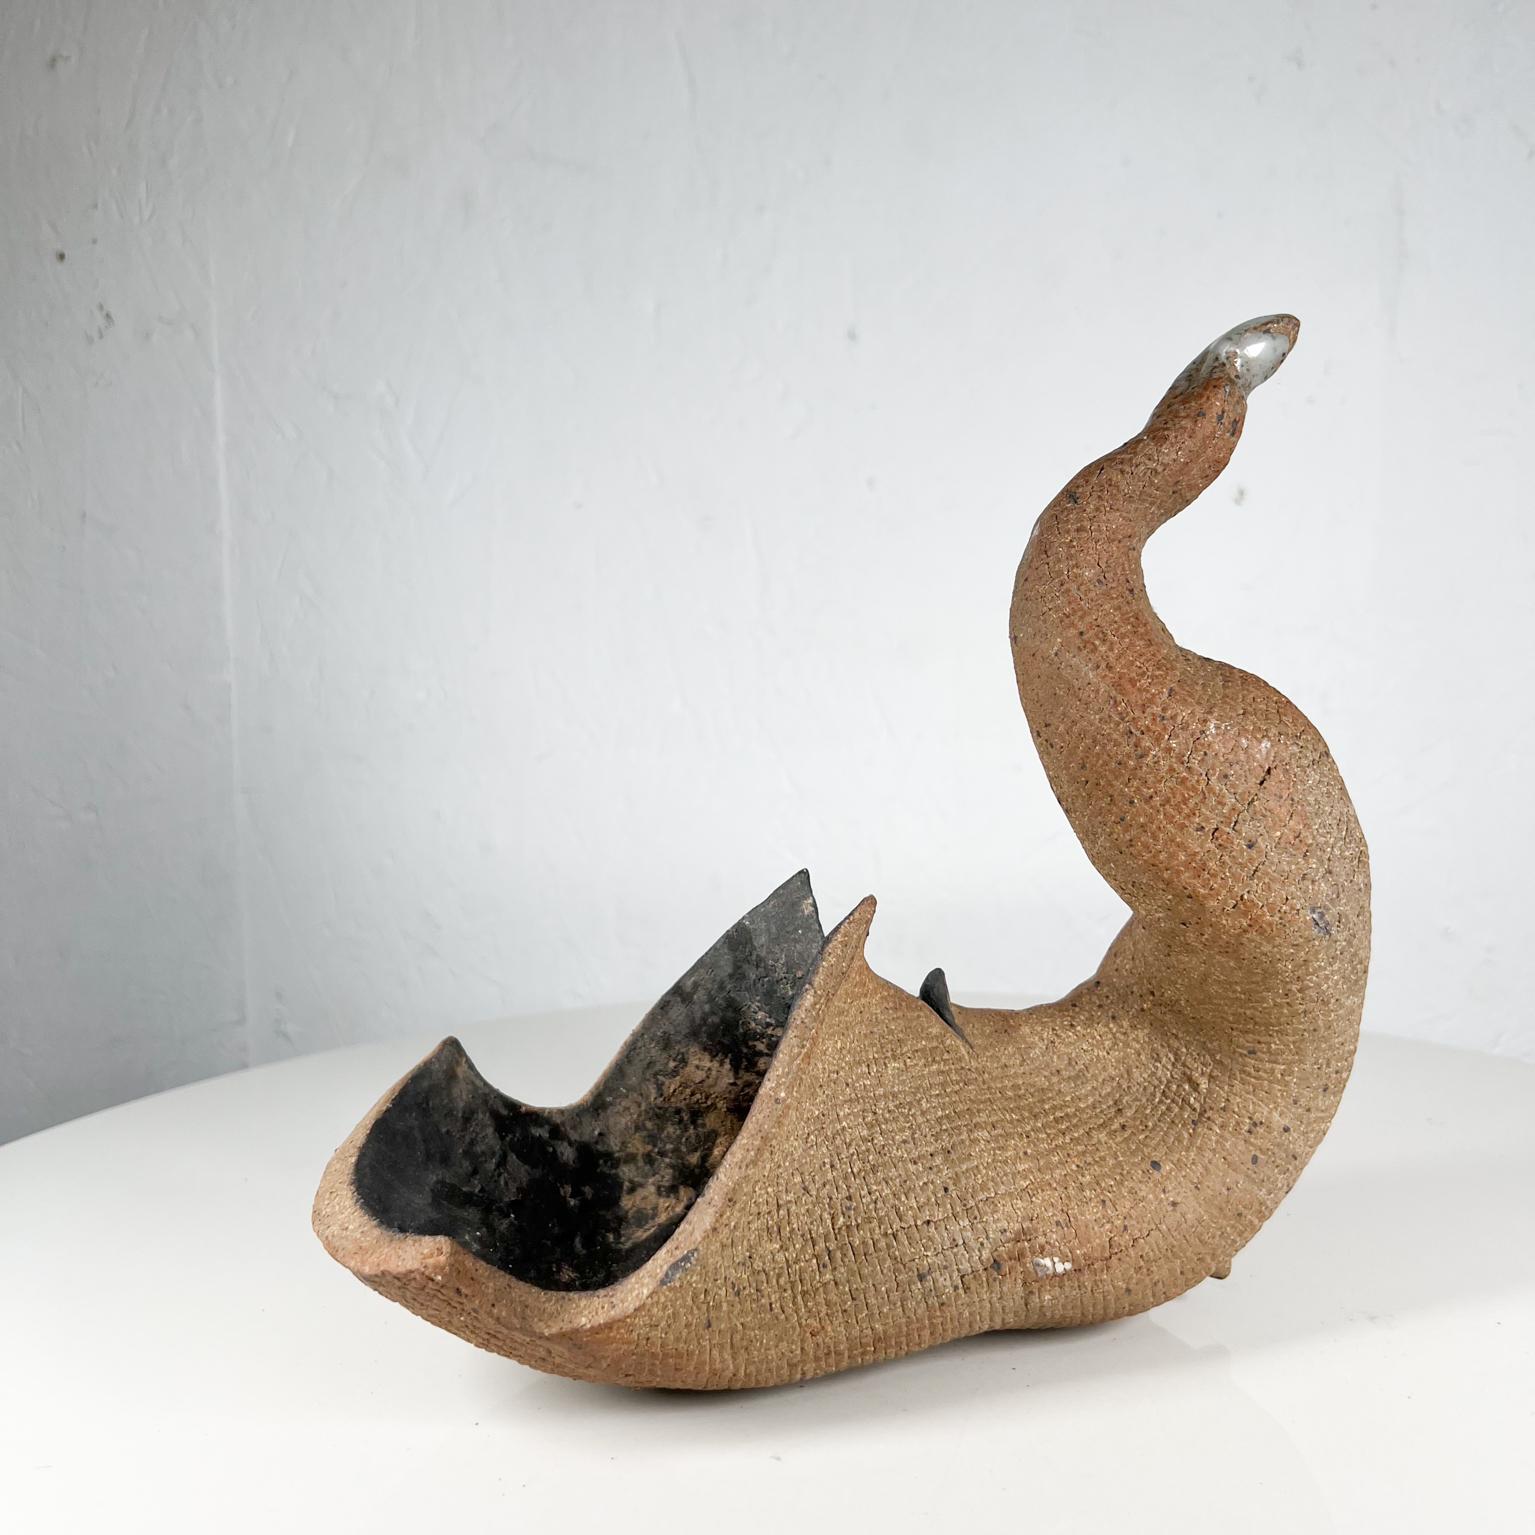 Vintage Abstract Art Modern Pottery Textured Horn Sculpture
9 hoch x 9,25 t 3,88
Gebraucht Original Vintage Zustand
Siehe mitgelieferte Bilder.